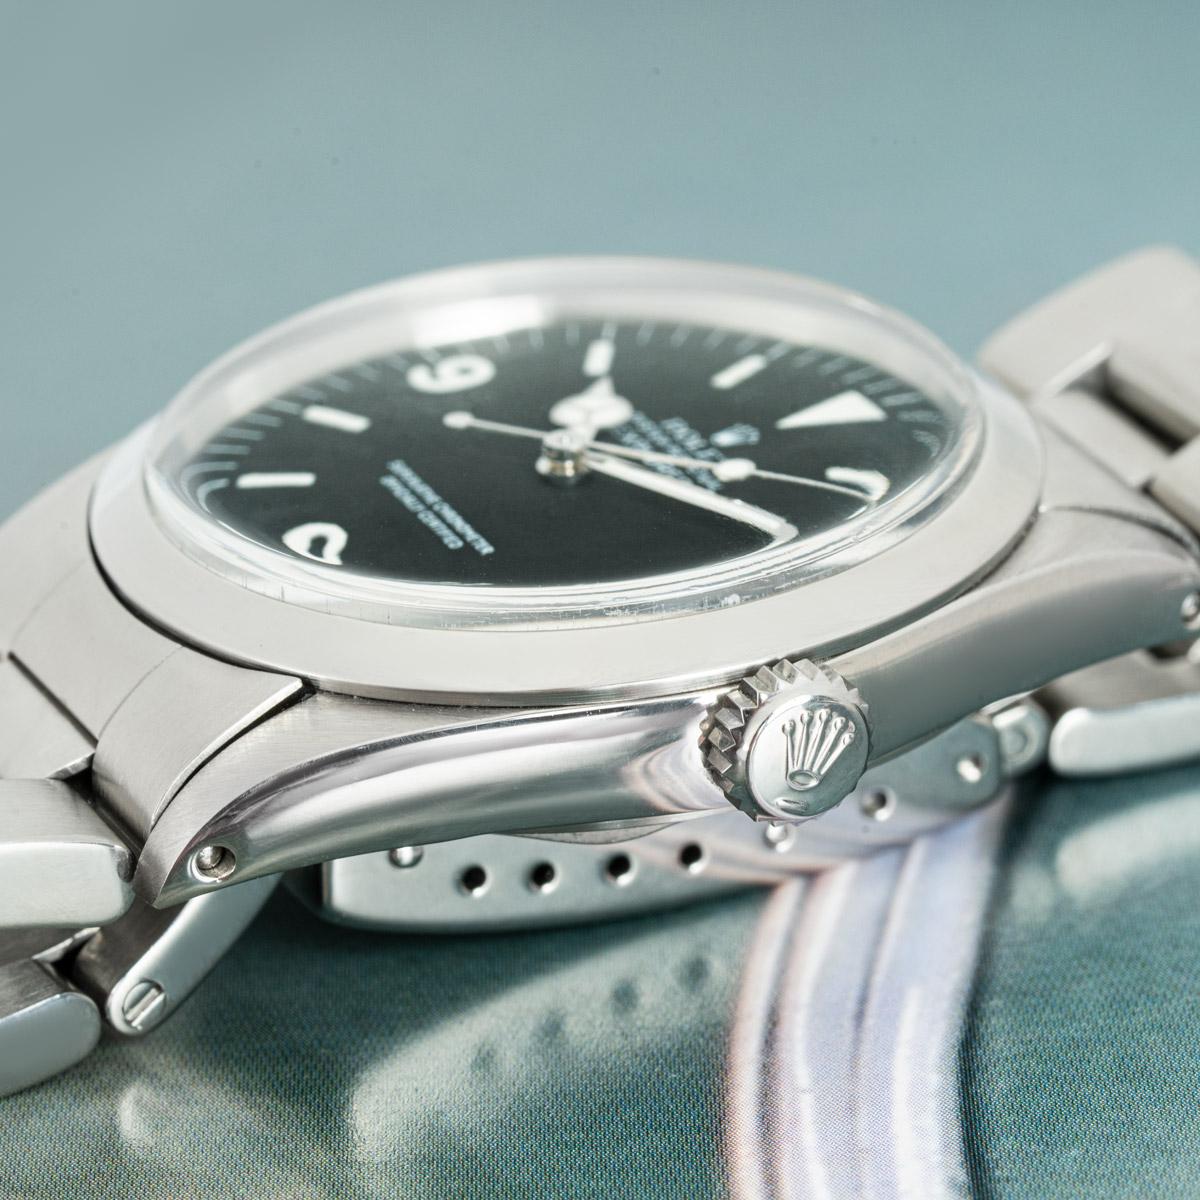 Une Rolex Explorer en acier inoxydable. Elle est dotée d'un cadran mat mark III distinctif avec chiffres arabes et d'une lunette fixe en acier inoxydable. Dotée d'un plexiglas, d'un mouvement automatique à remontage automatique et d'un bracelet